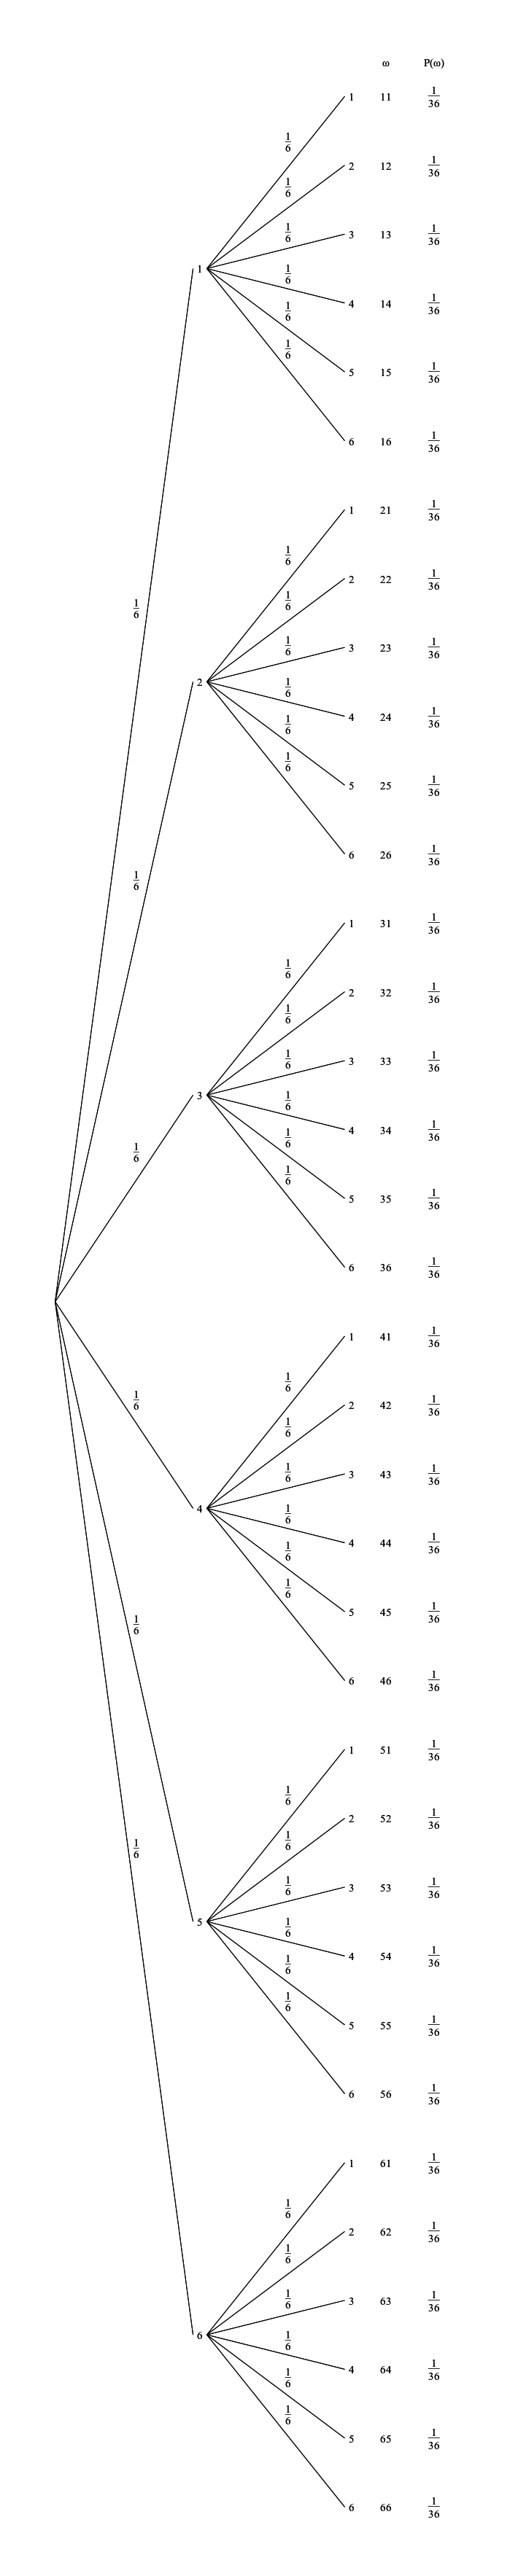 Baumdiagramm